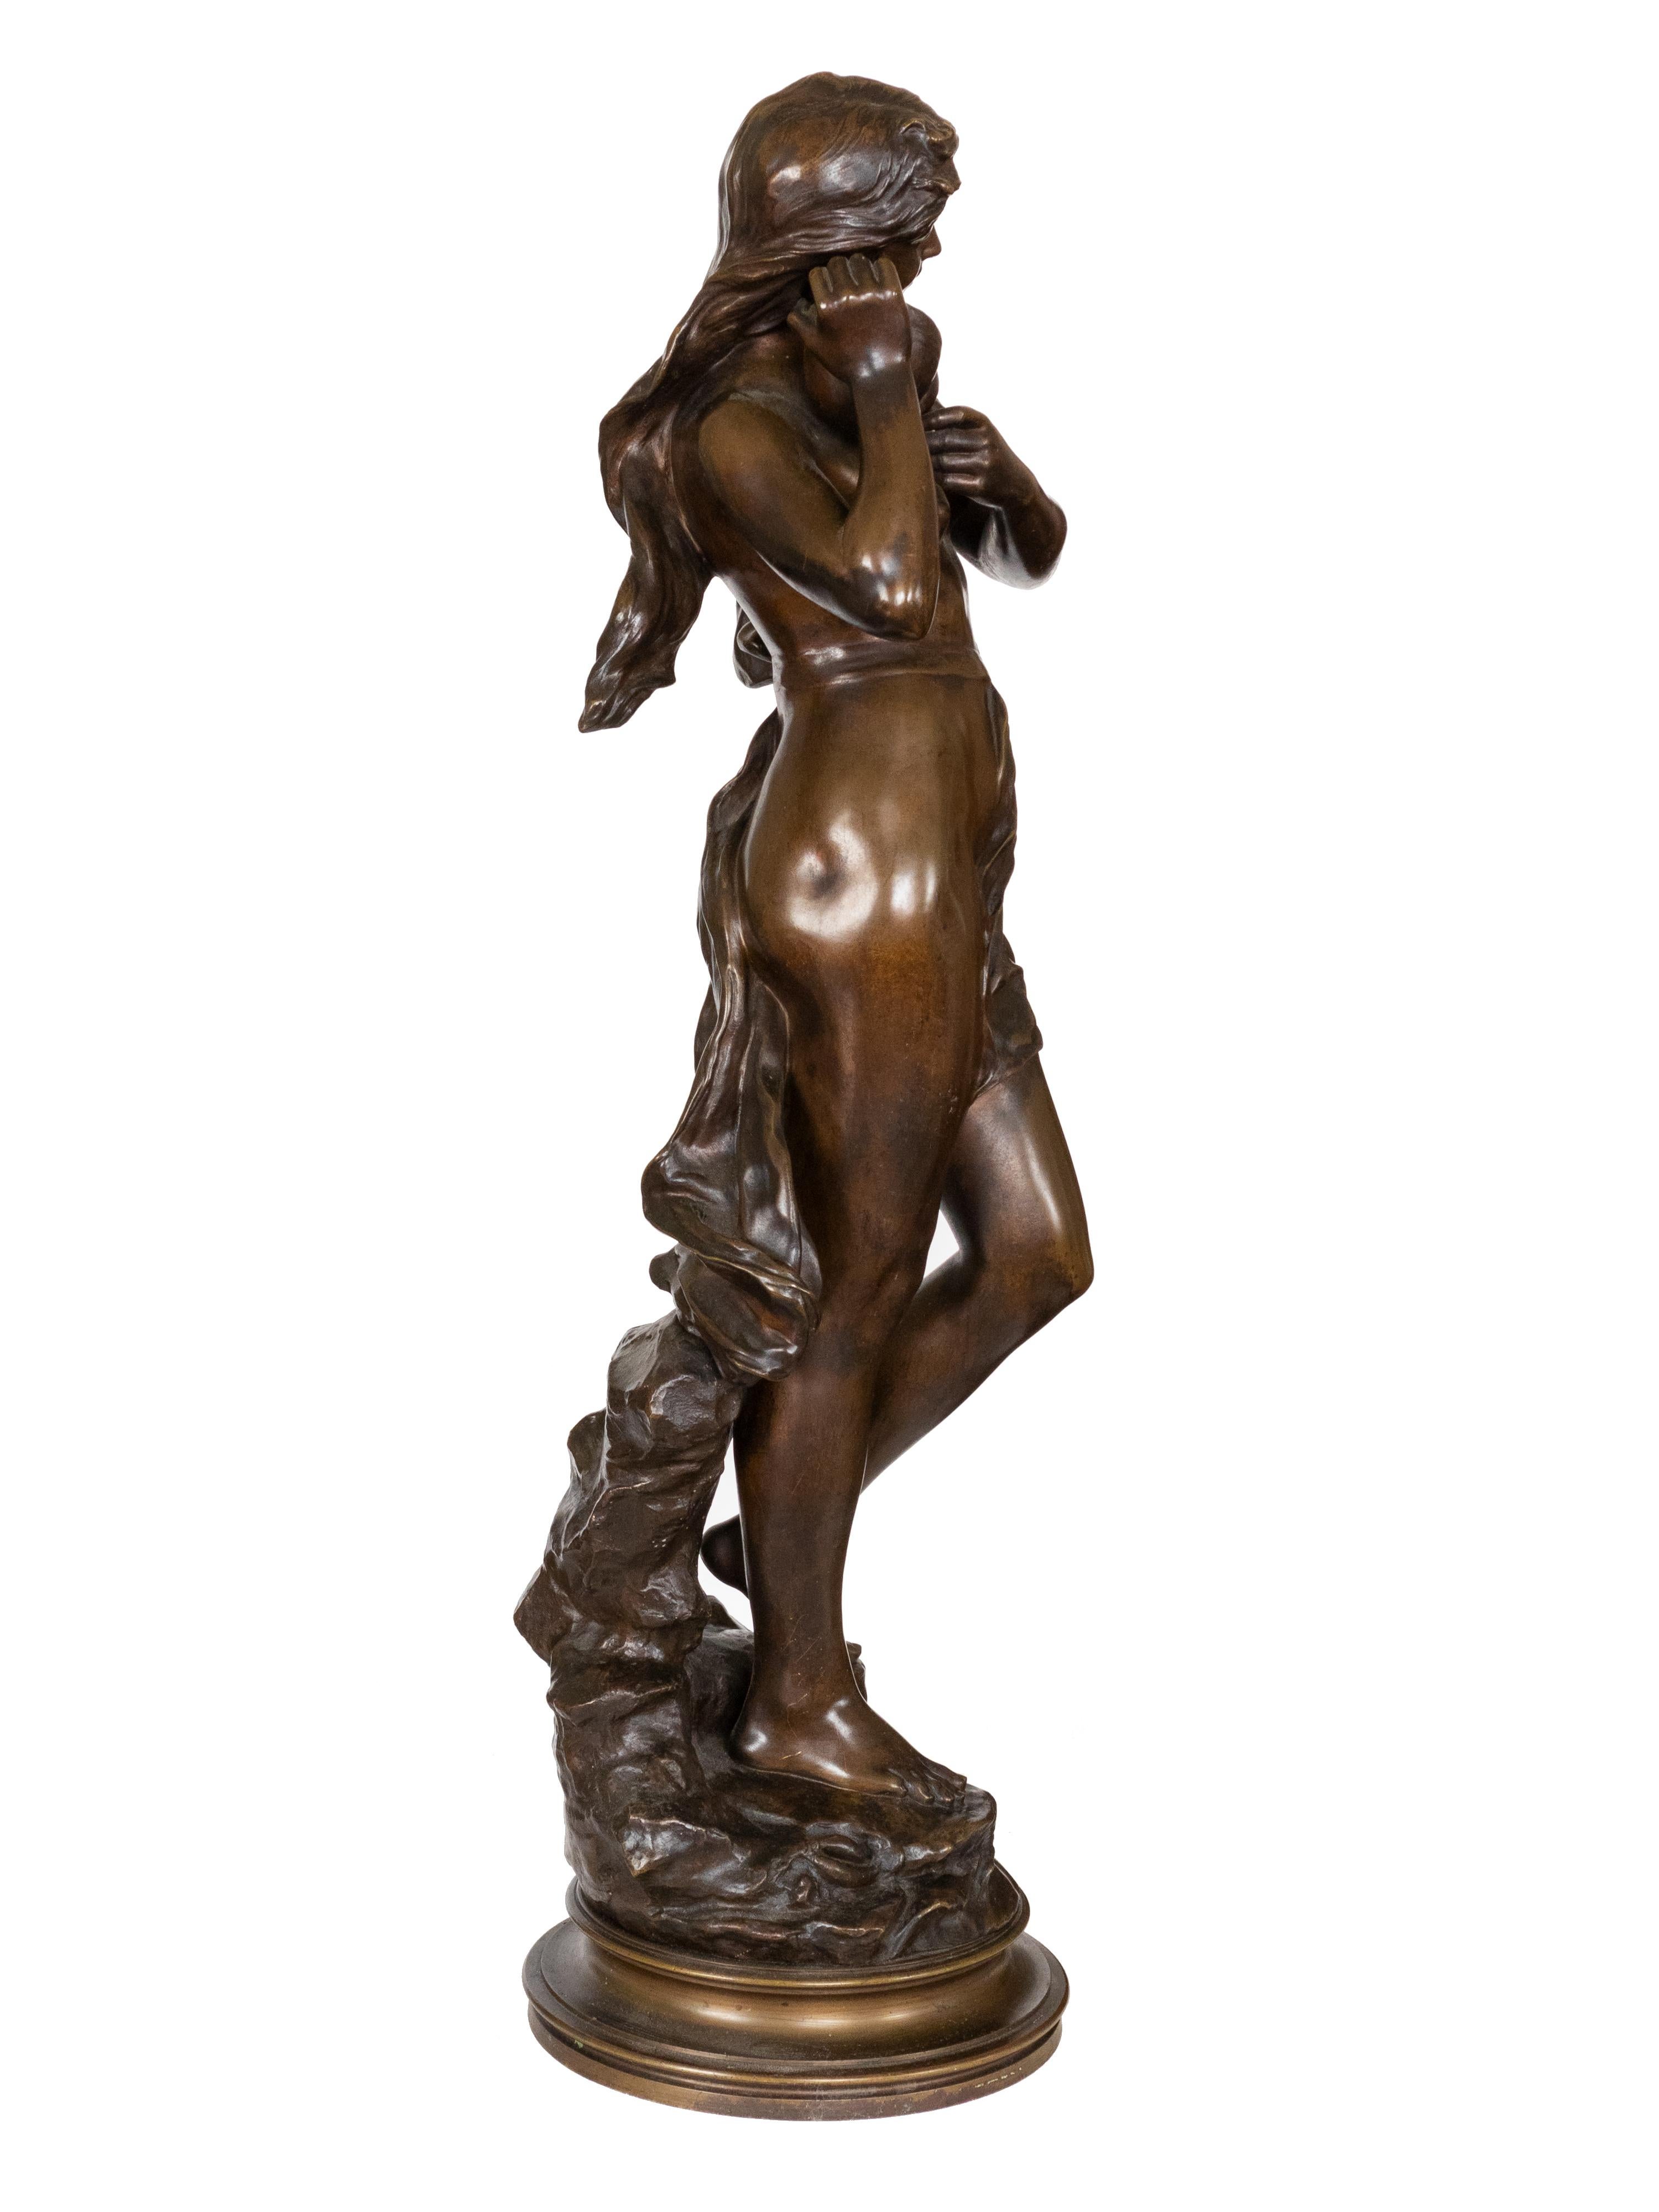 Eurydice, l'une des Néréides, est représentée dans une statue en bronze du XIXe siècle. Ses longs cheveux flottent librement au milieu d'un paysage rocheux et elle porte une conque en guise de boucle d'oreille. La sculpture porte la signature